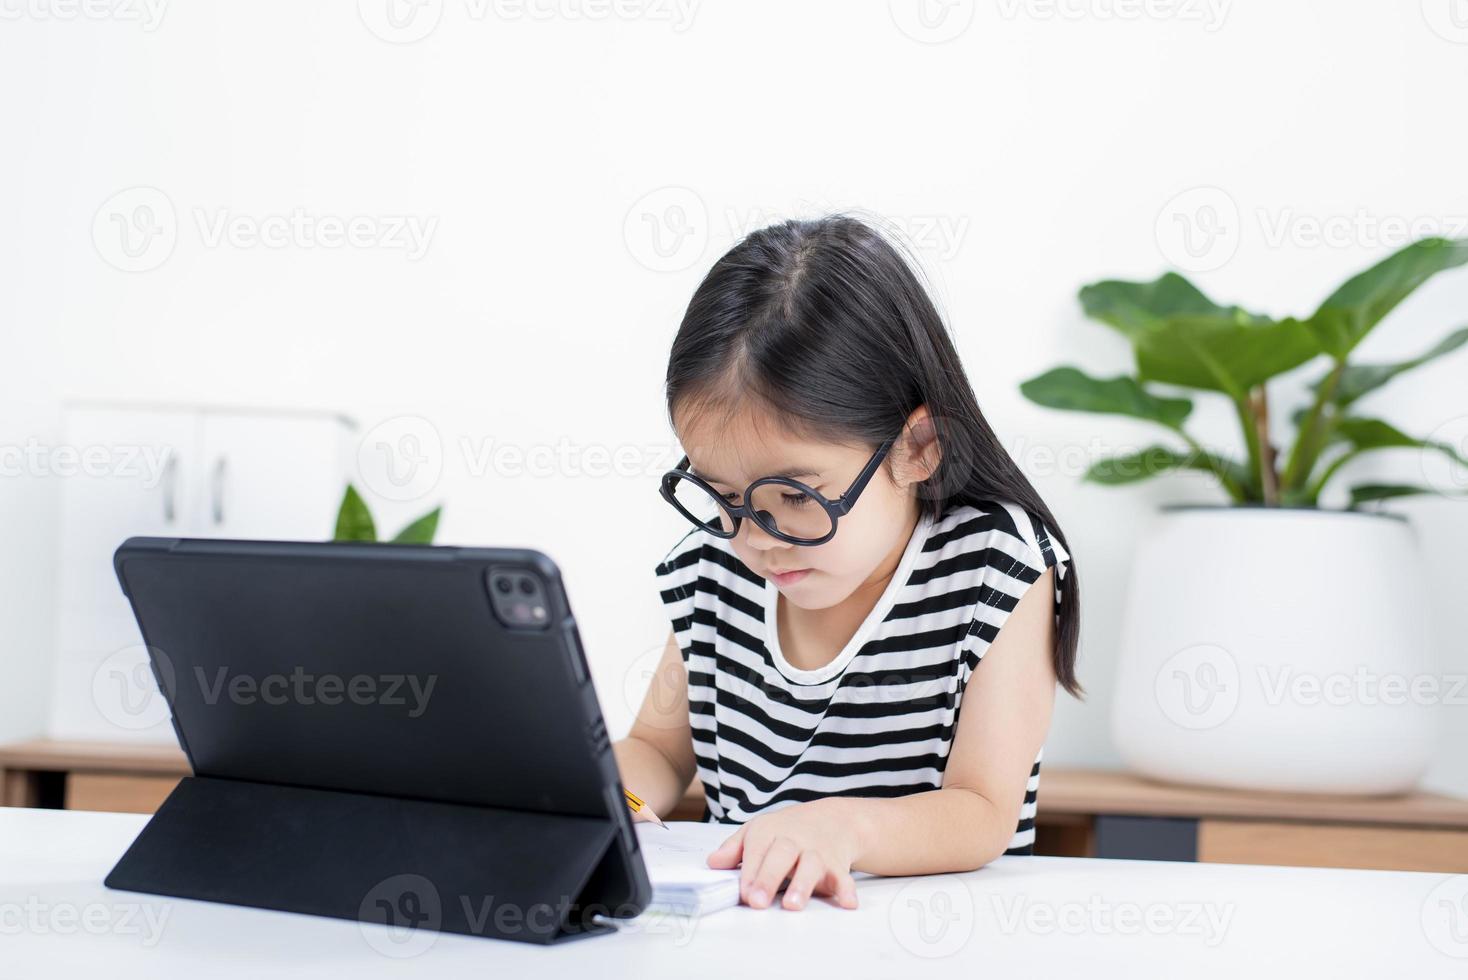 enfant asiatique fille étudiant wow excité sur appel vidéo apprendre à étudier en ligne ou personne apprendre de l'école à domicile avec tablette photo